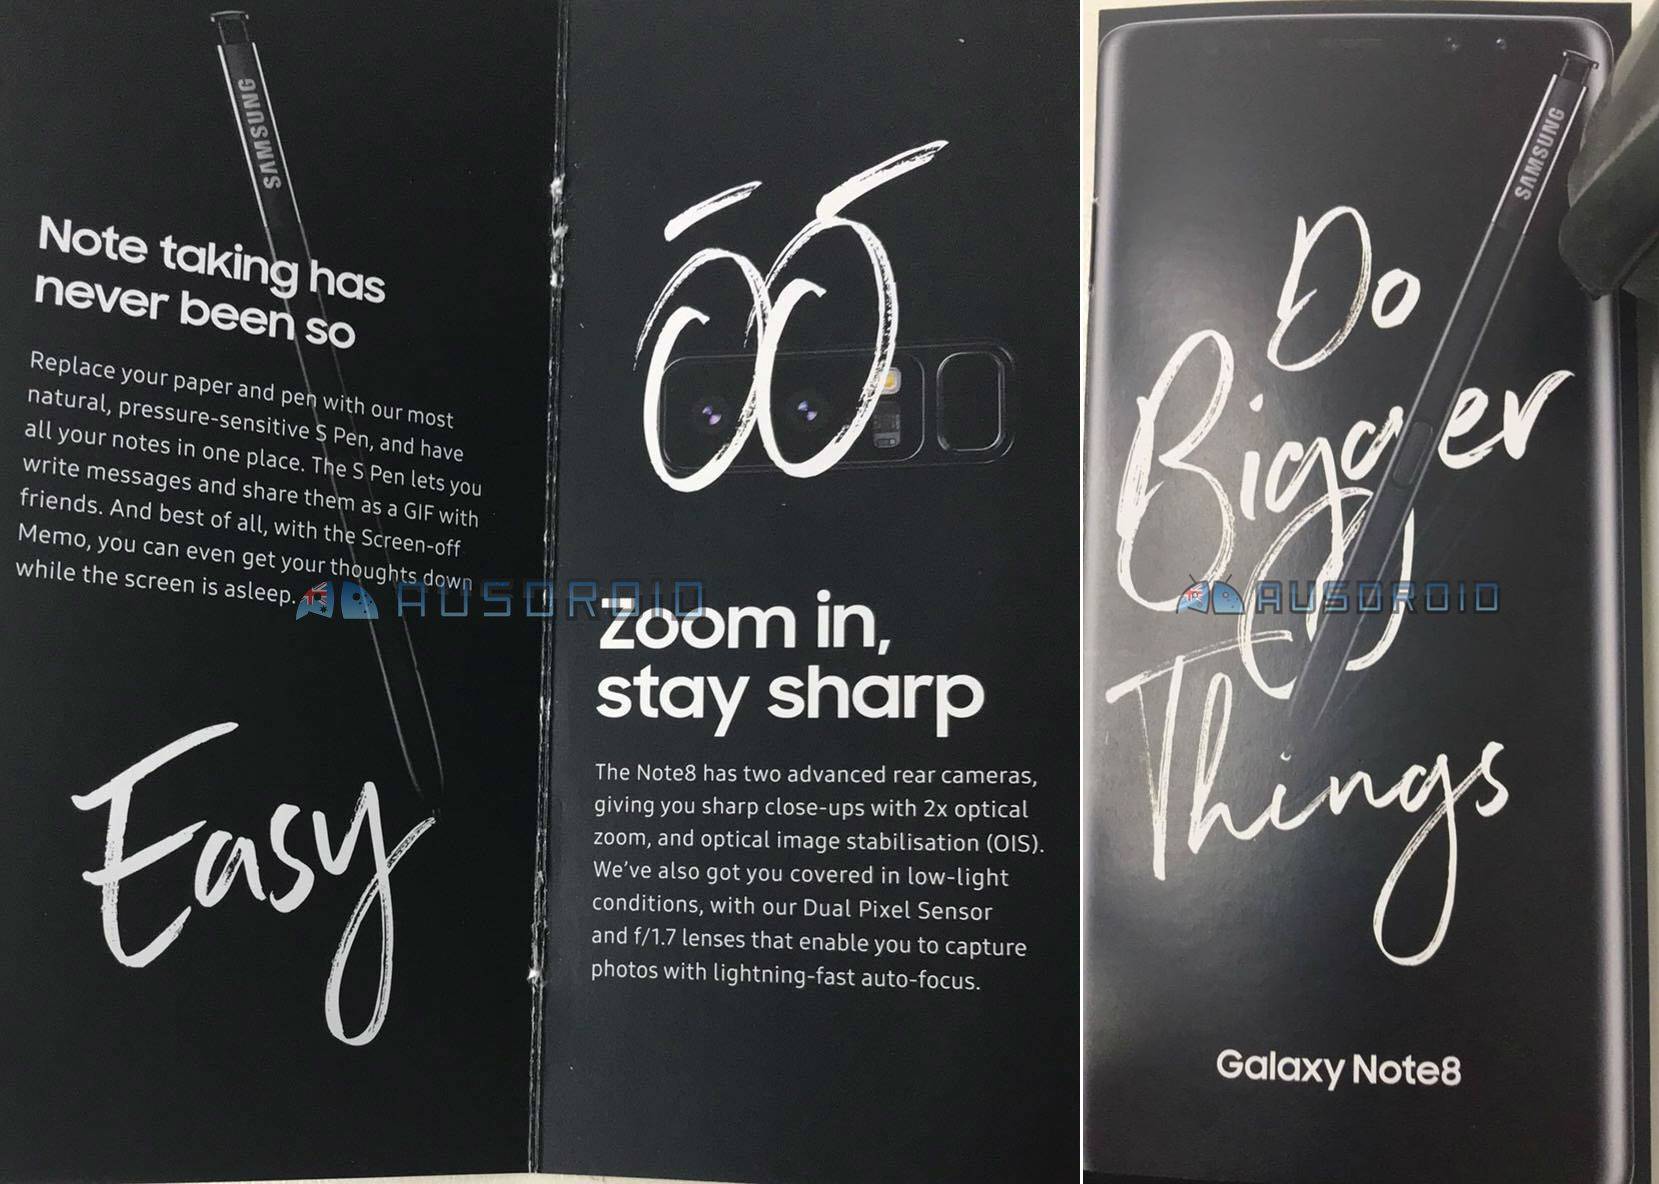 Samsung Galaxy Note 8 bietet enthülltes Werbematerial 21